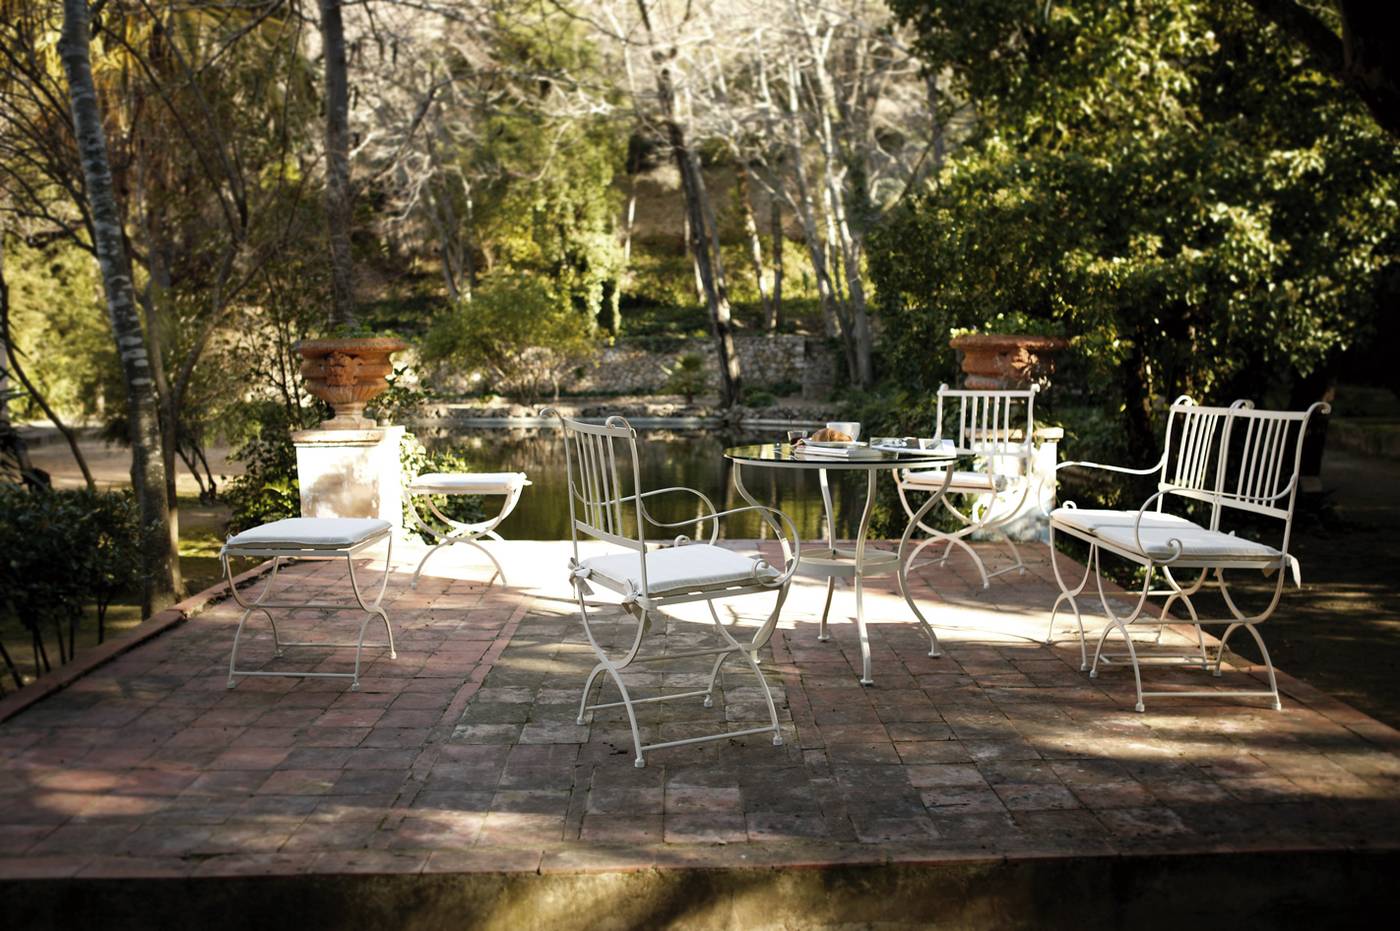 Conjunto forja Madrid - Conjunto de forja con mesa redonda de mosaico de piedra natural o cristal y dos sillones.